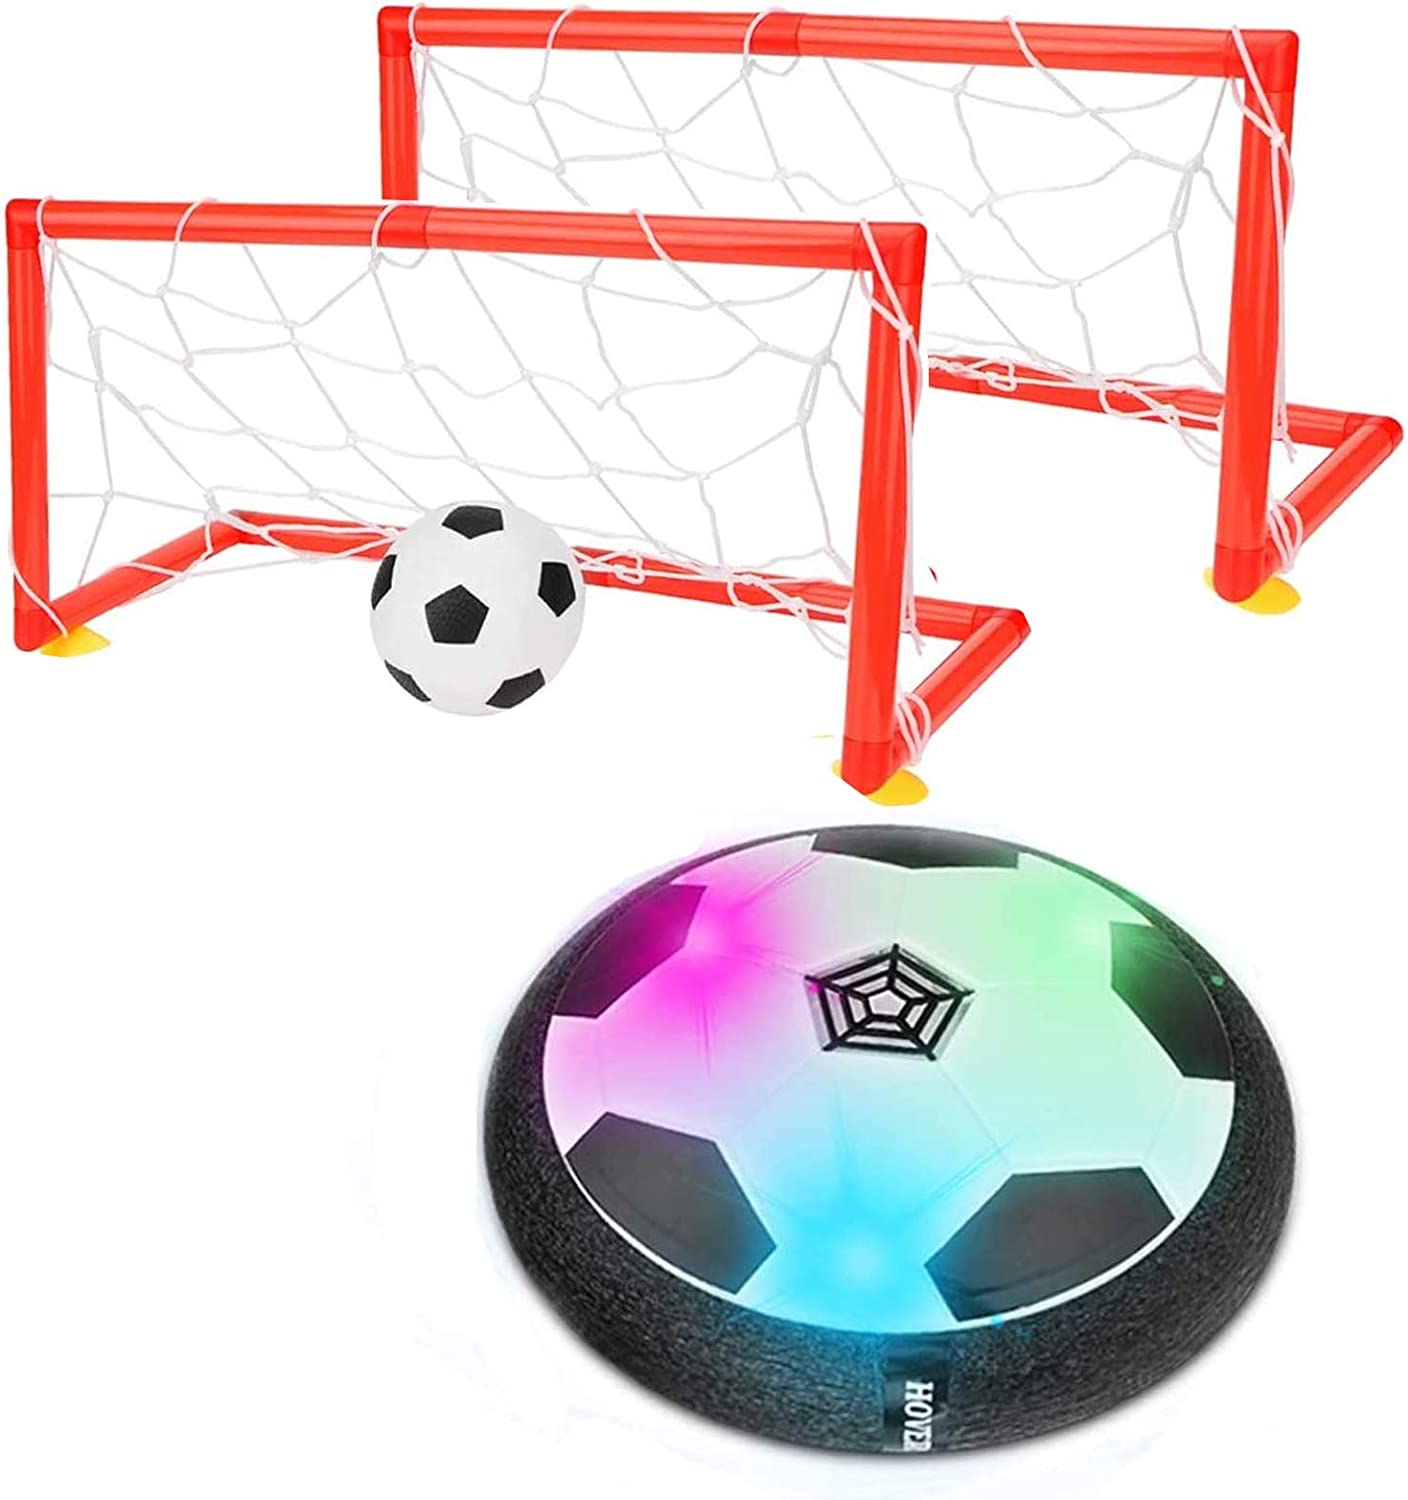 colmanda Air Fussball Spielzeug, Kinderspielzeug Fußball mit LED Beleuchtung und Musik, Air Power So